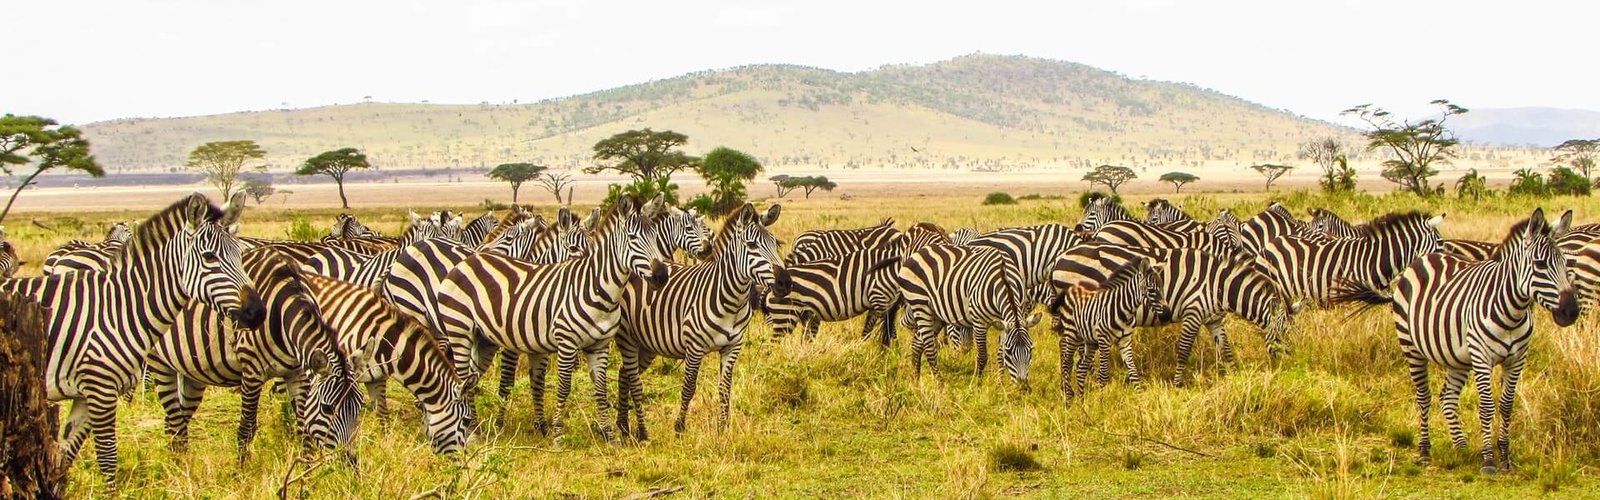 Africa – Amazing African Safari